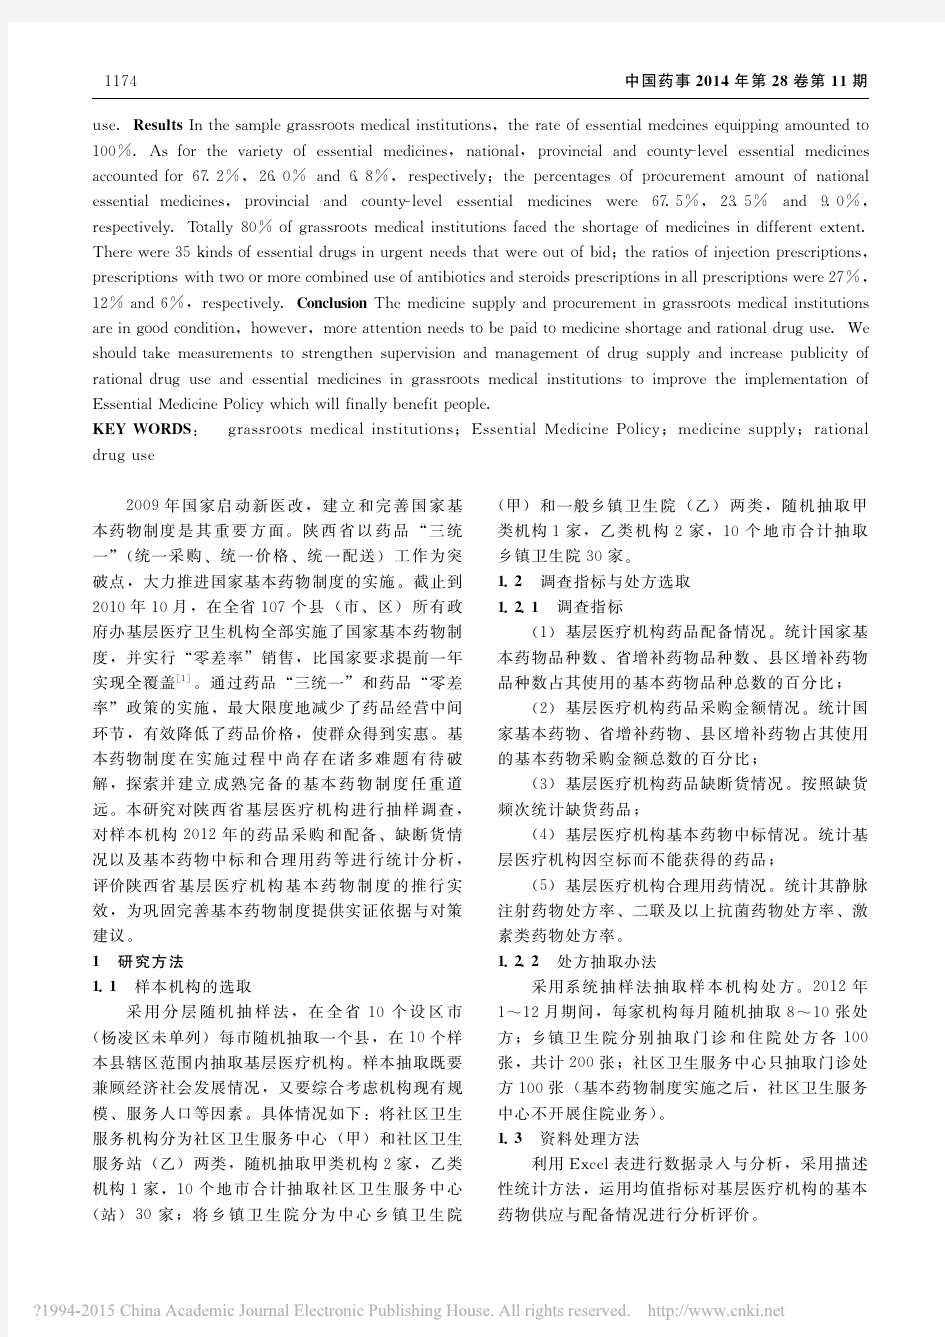 陕西省基层医疗卫生机构基本药物制度实施效果评估研究_武丽娜